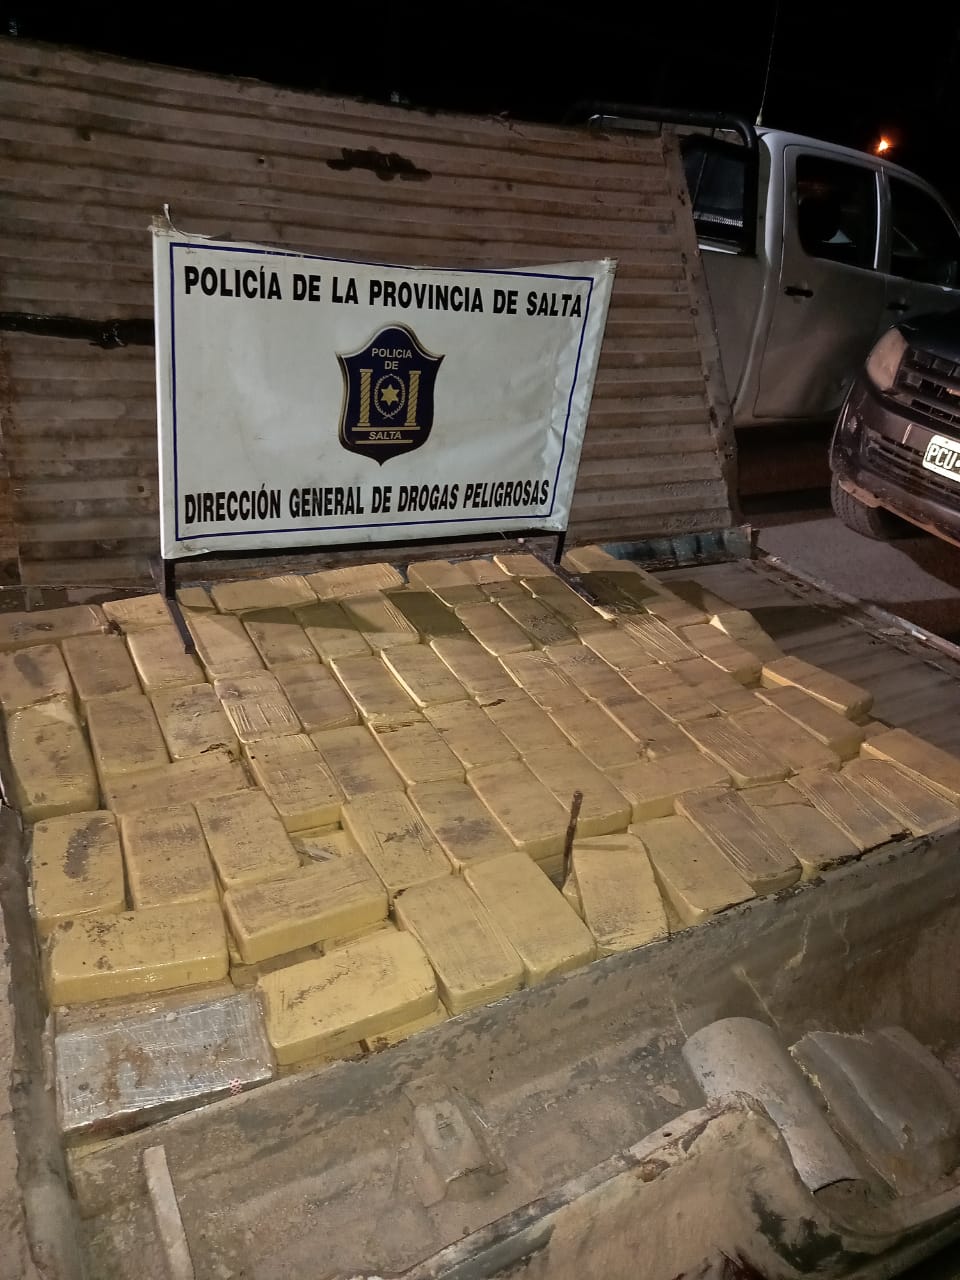 El secuestro del cargamento se dio luego del seguimiento de los vehículos, en el marco de una operación iniciada por una denuncia en sede policial. - Fotos: Policía de la provincia de Salta.